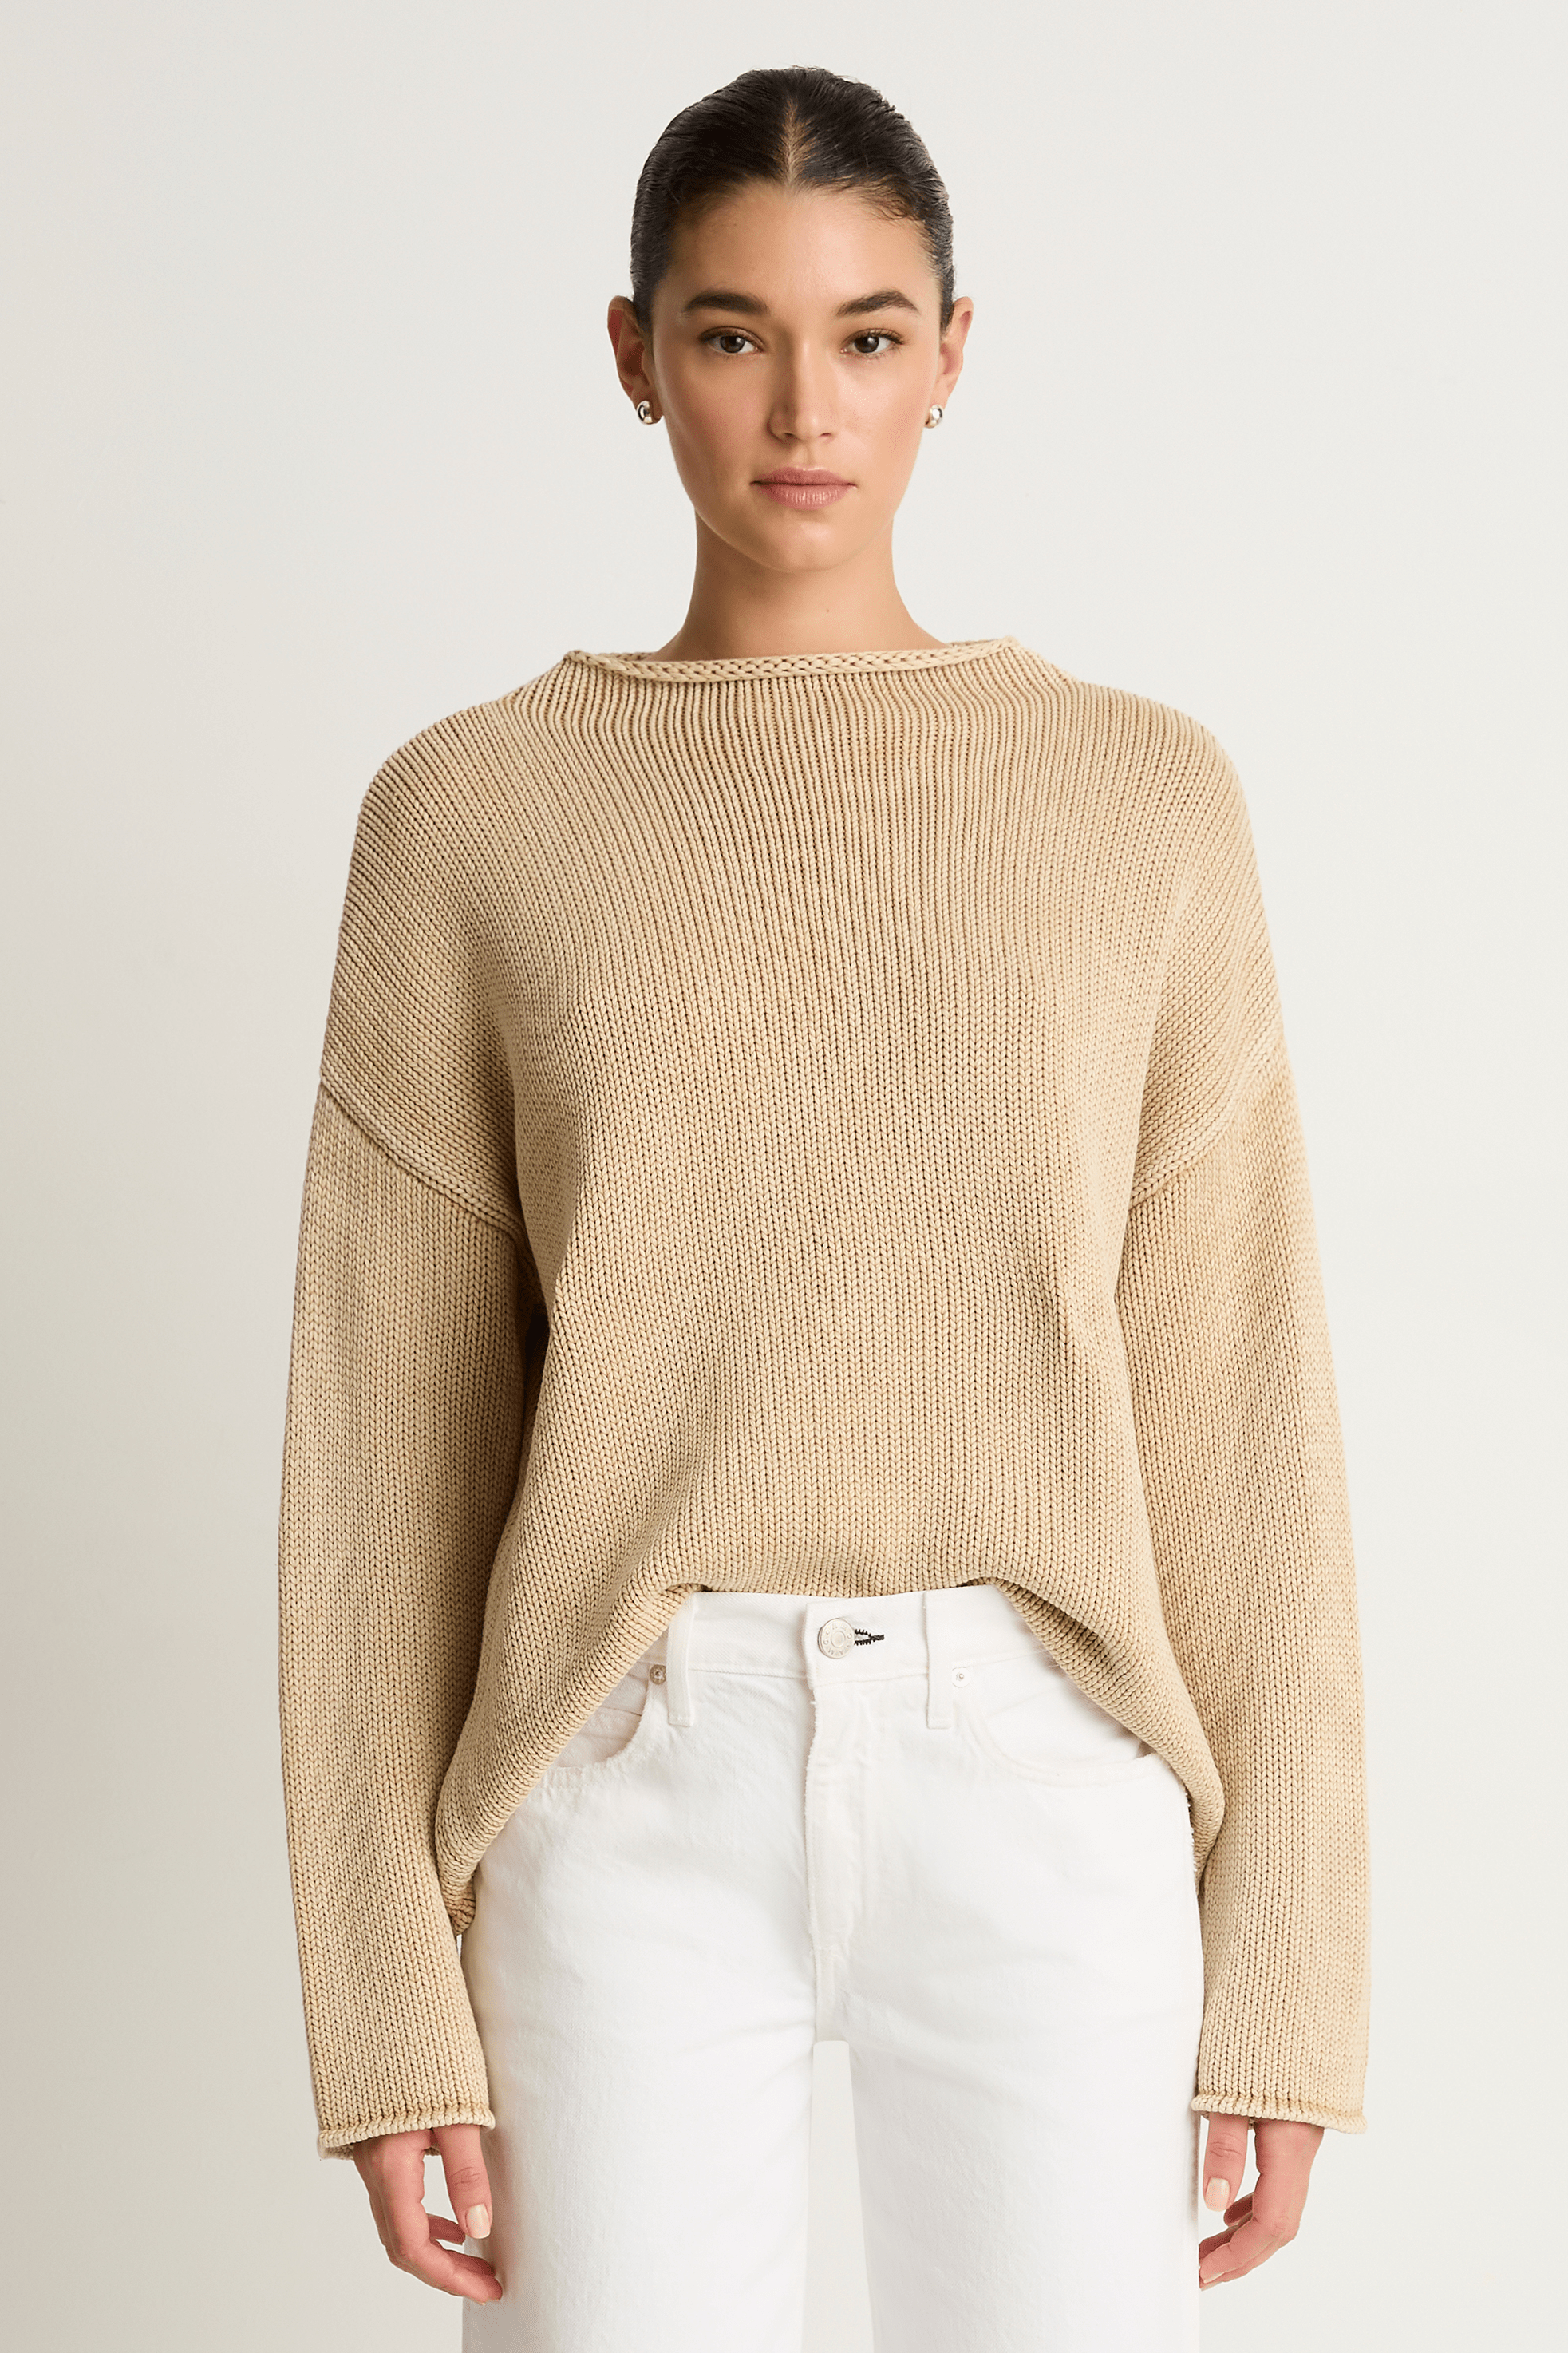 Demylee Lamis Cotton Sweater - Sandstone